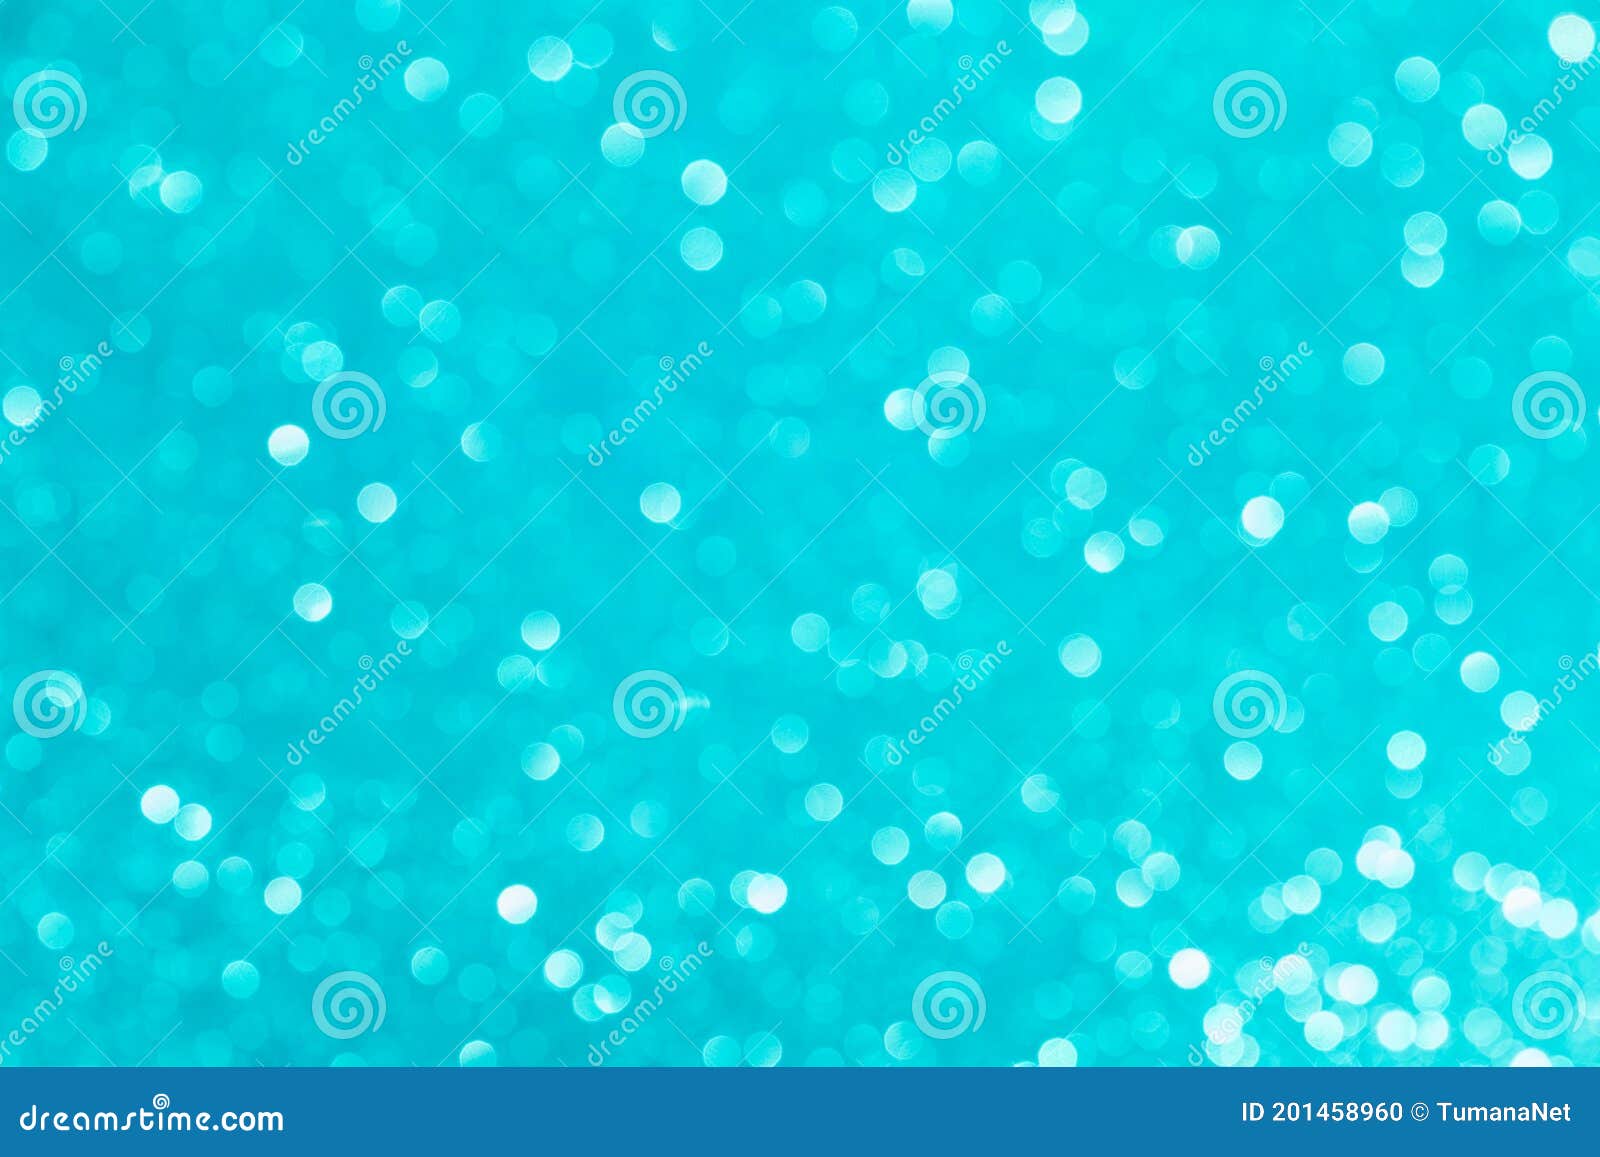 86800 Aqua Blue Backgrounds Illustrations RoyaltyFree Vector Graphics   Clip Art  iStock